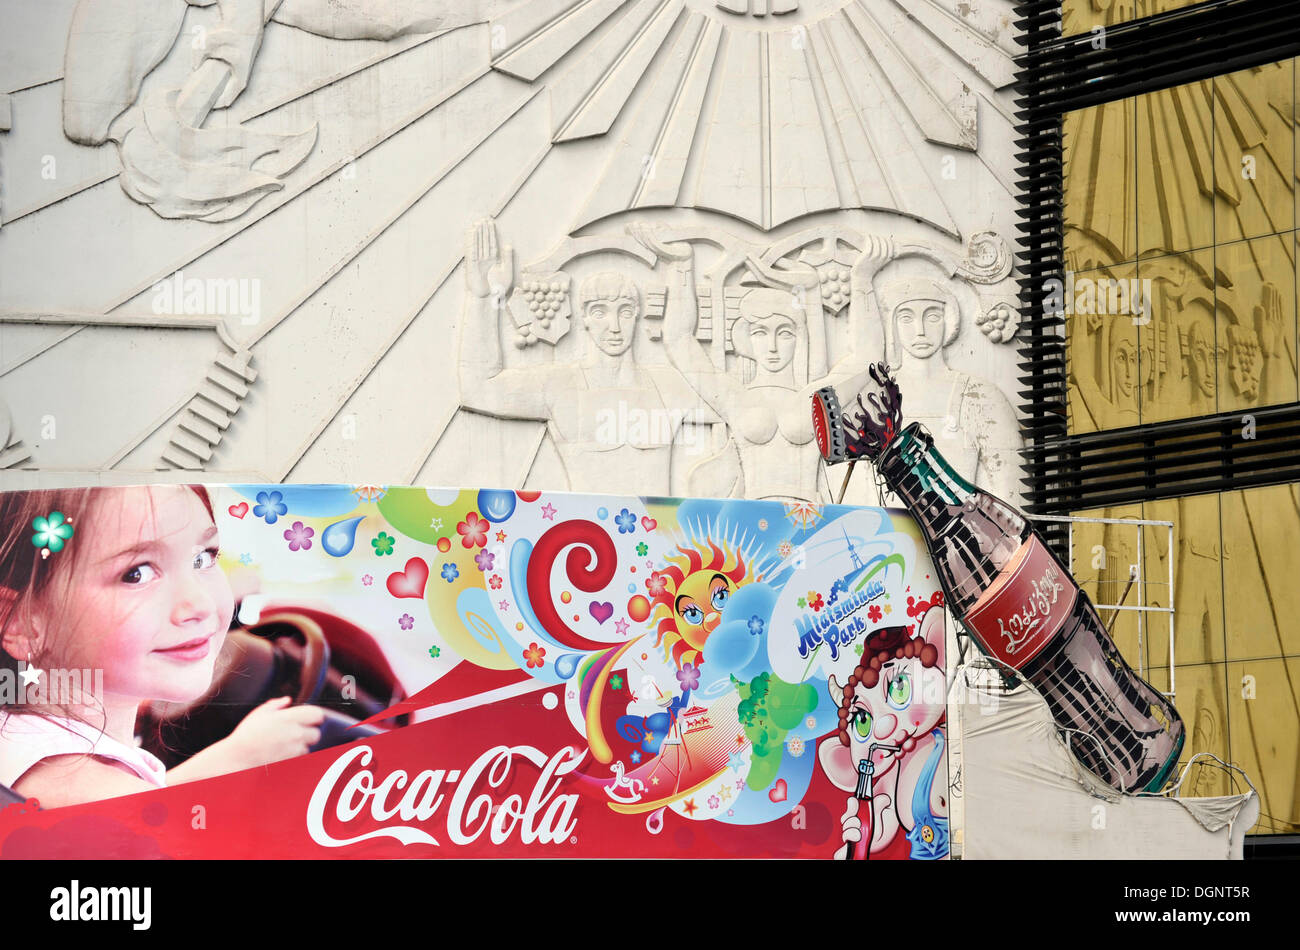 Coca Cola pubblicità, il contrasto tra tradizione e modernità, Tbilisi, Georgia, Asia Occidentale Foto Stock